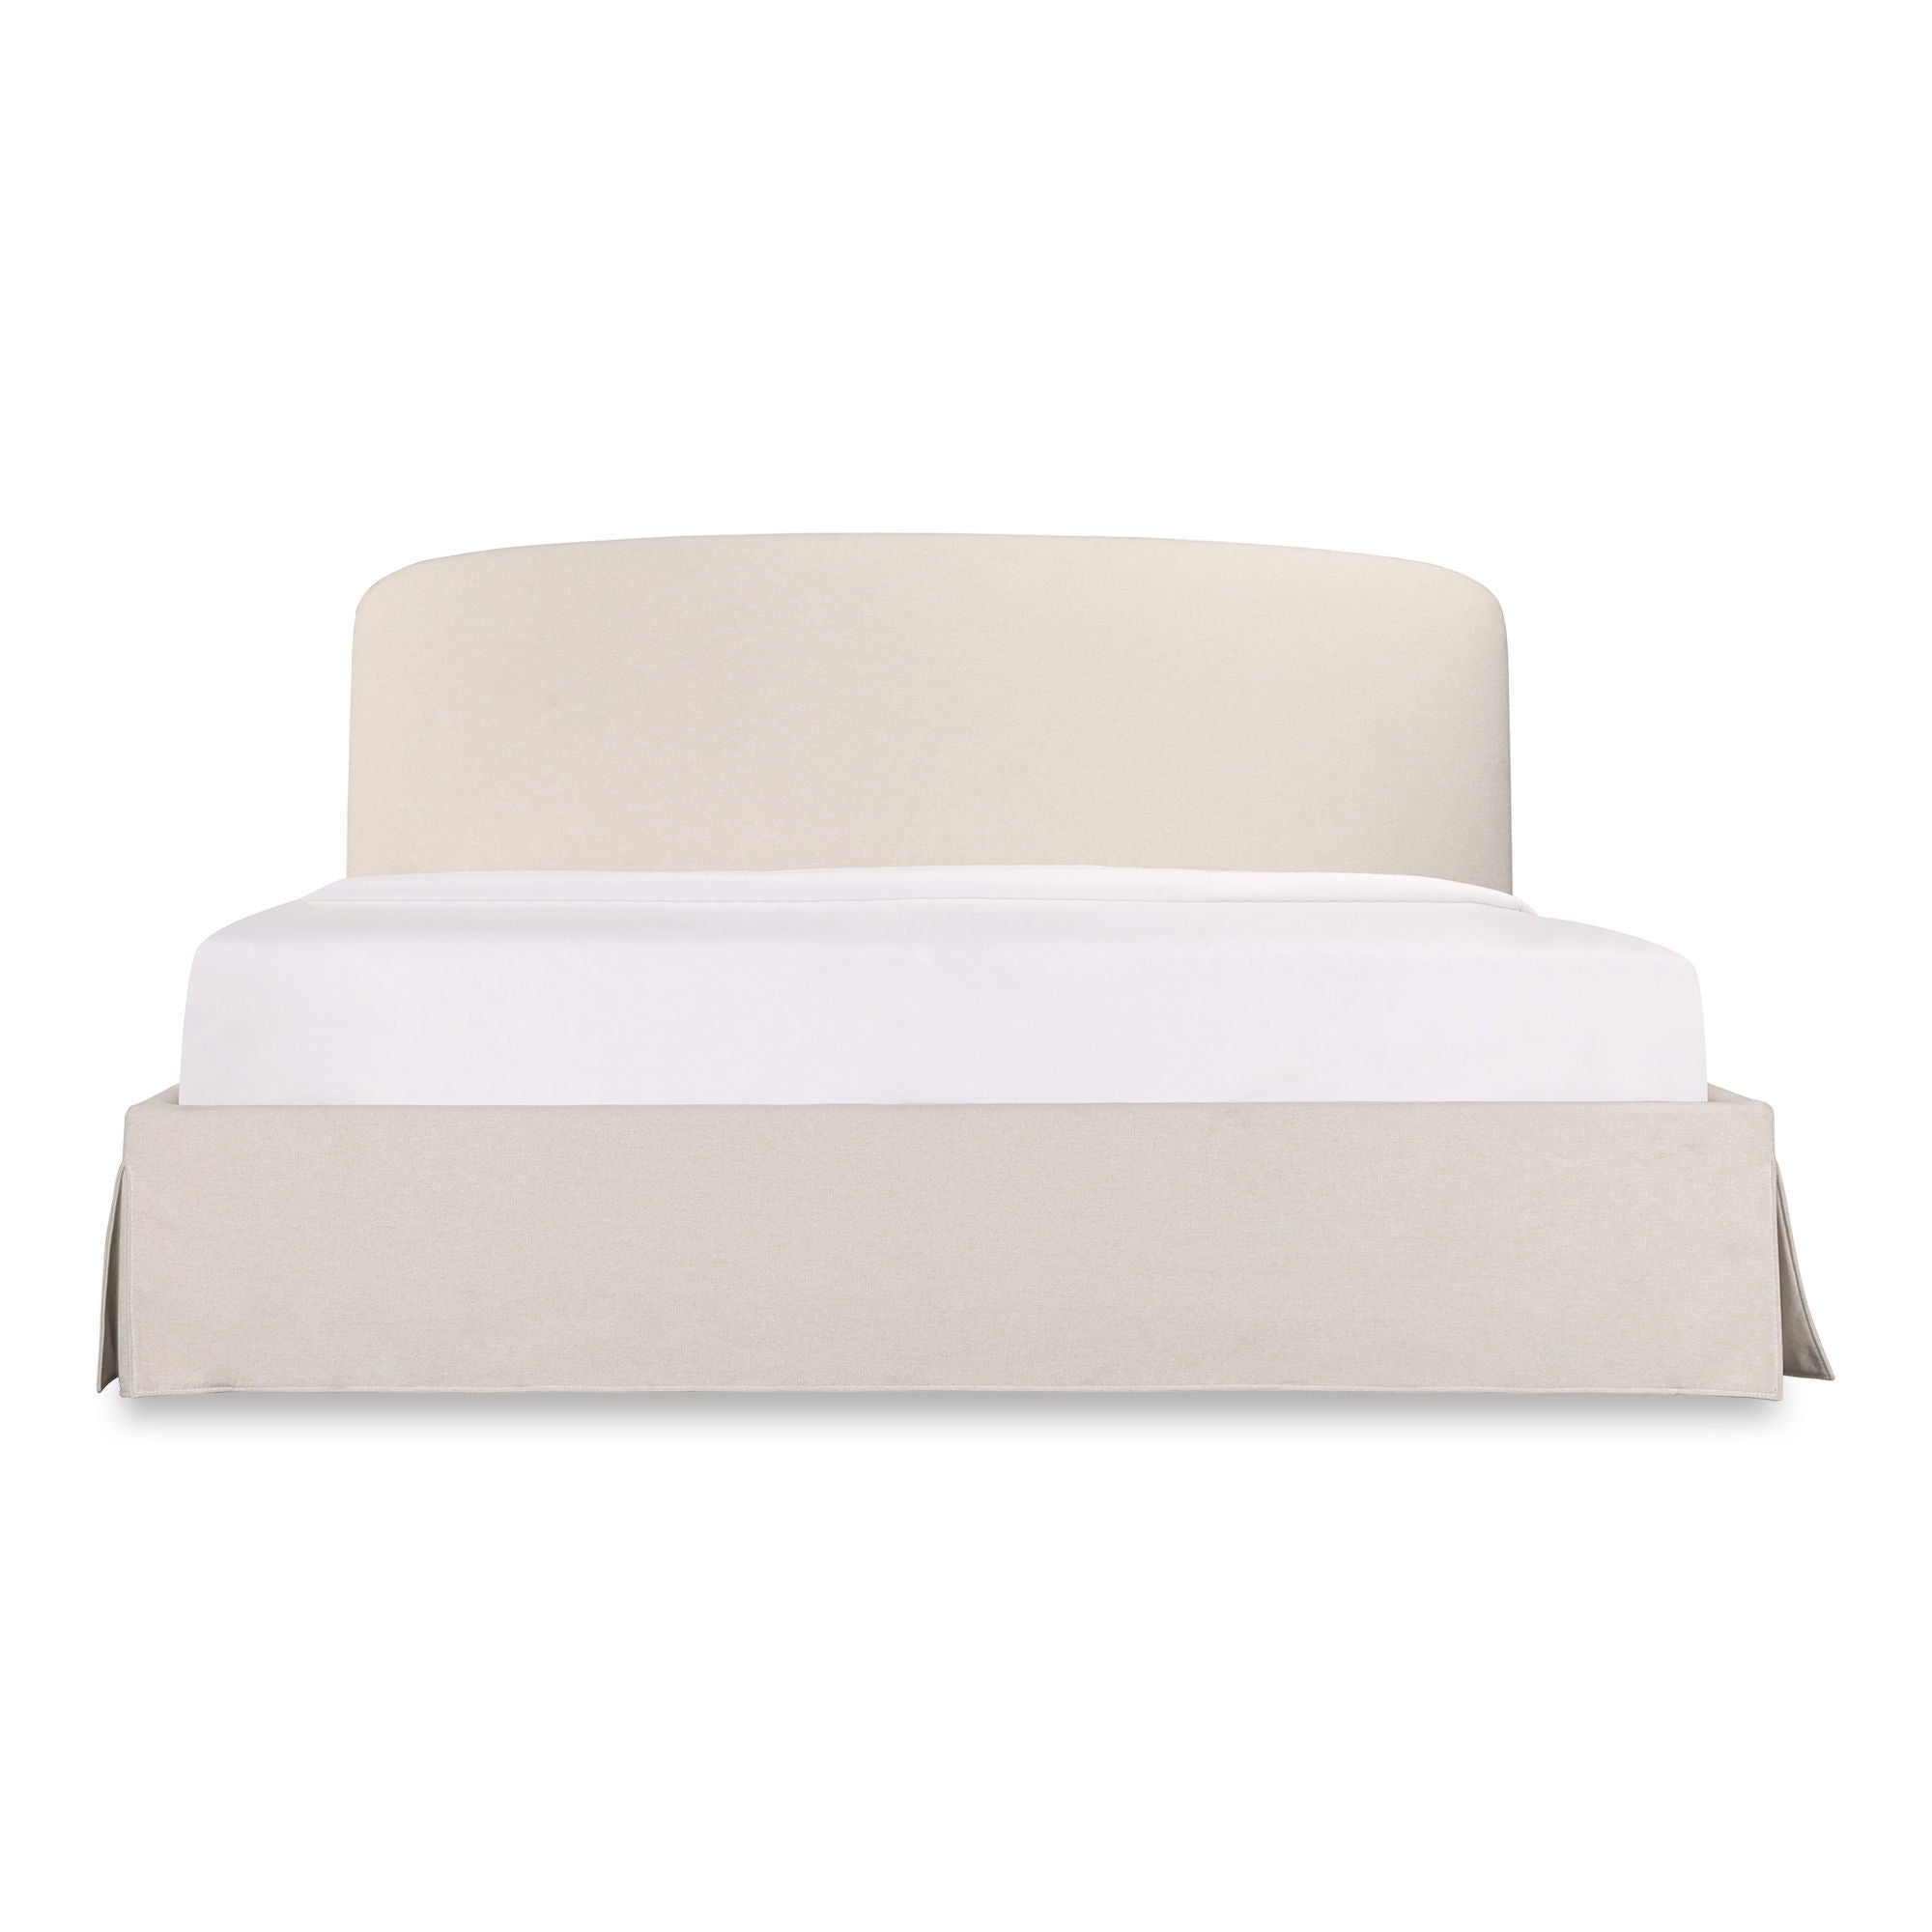 Joan - Queen Storage Bed - Cream